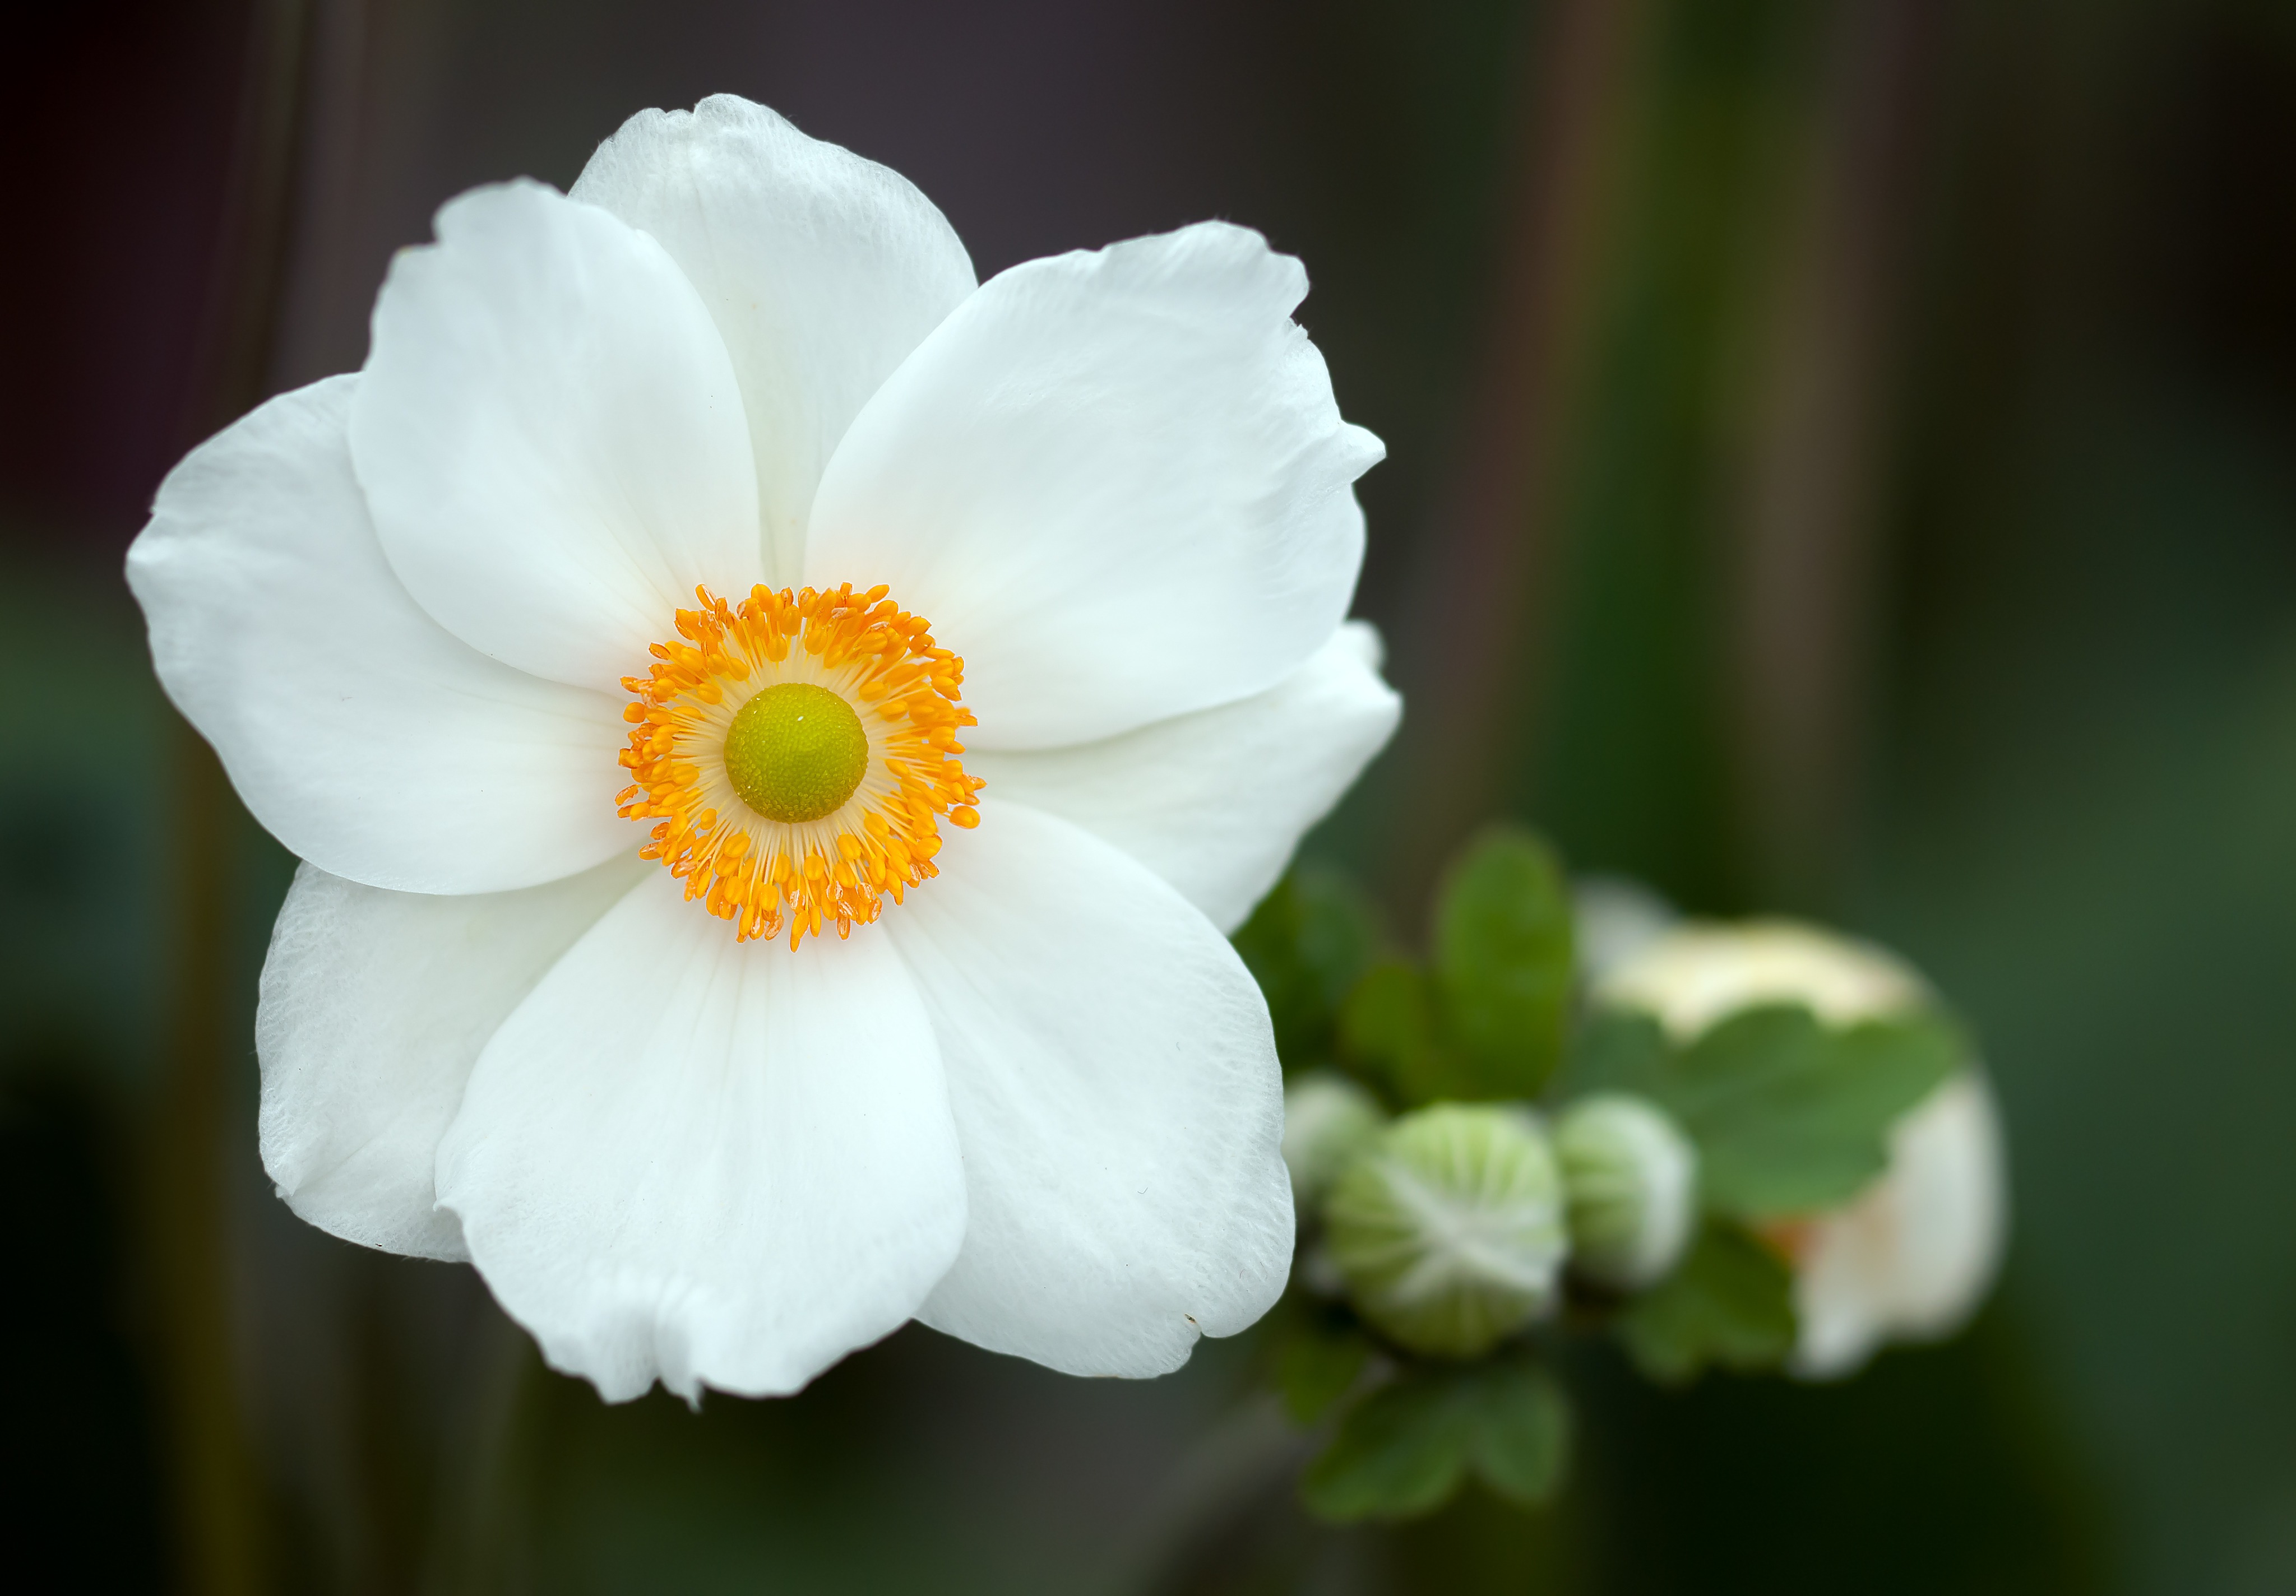 delicate white flower